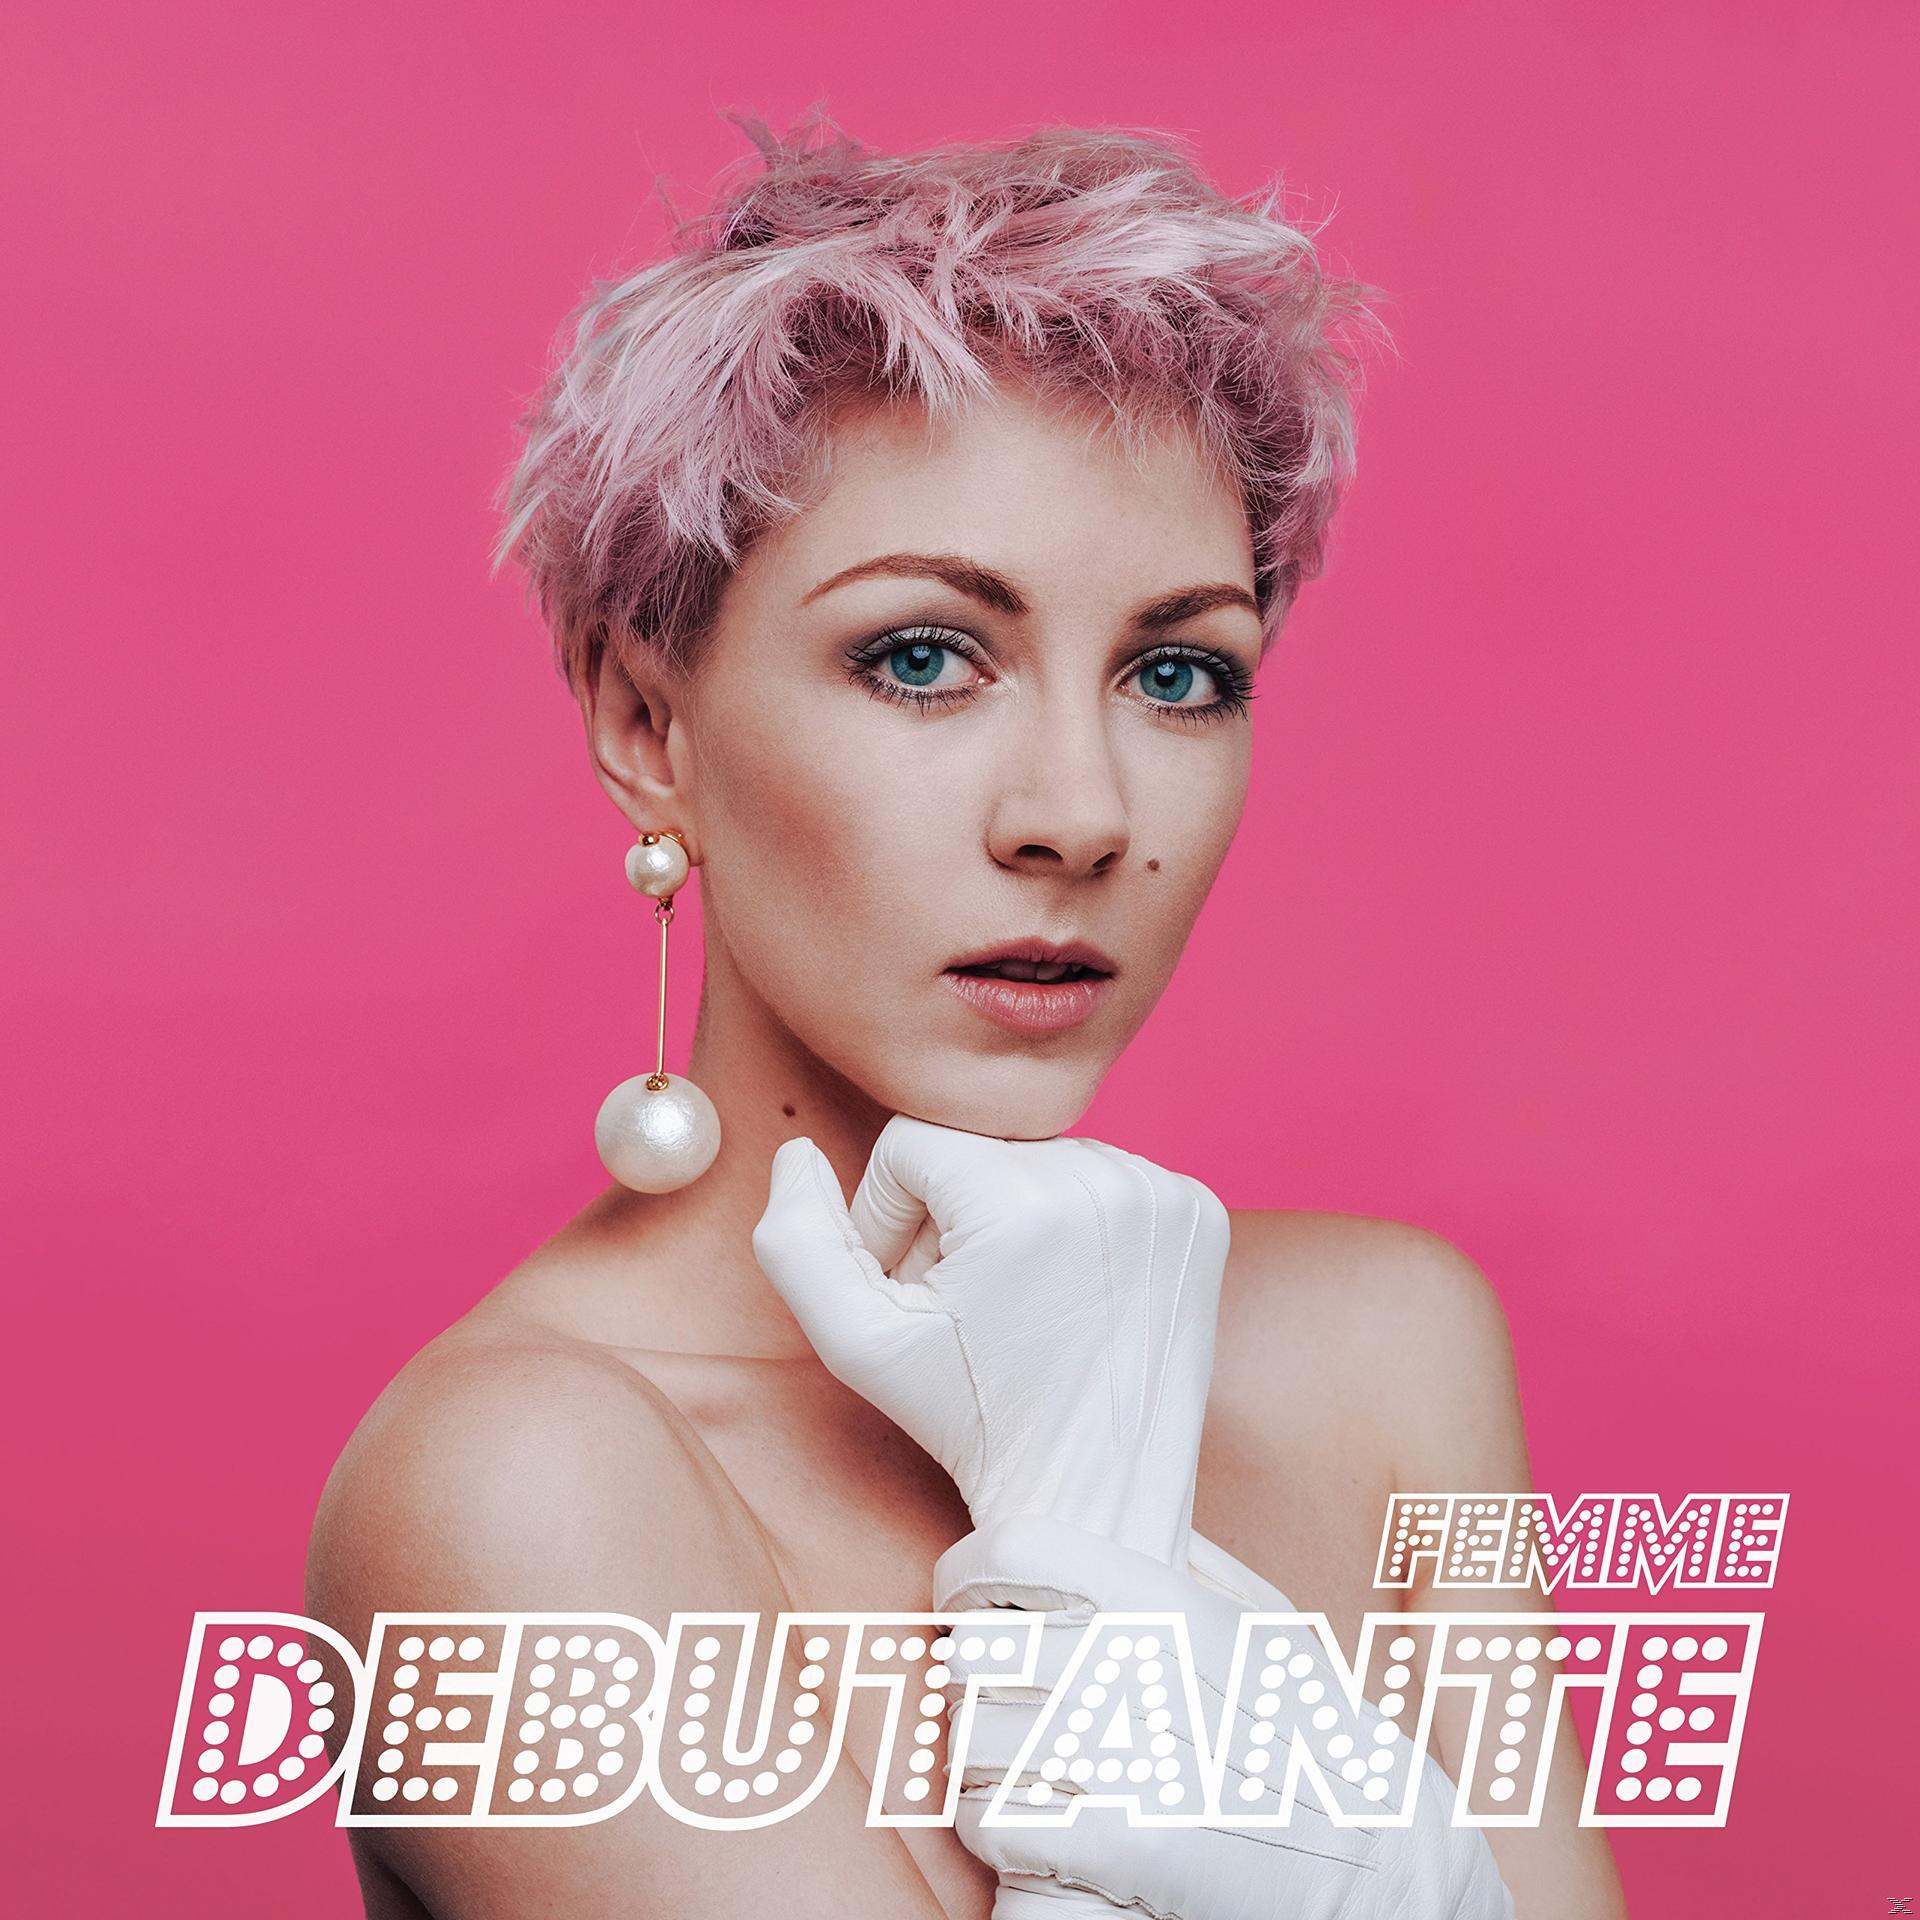 Femme - Debutante (CD) 